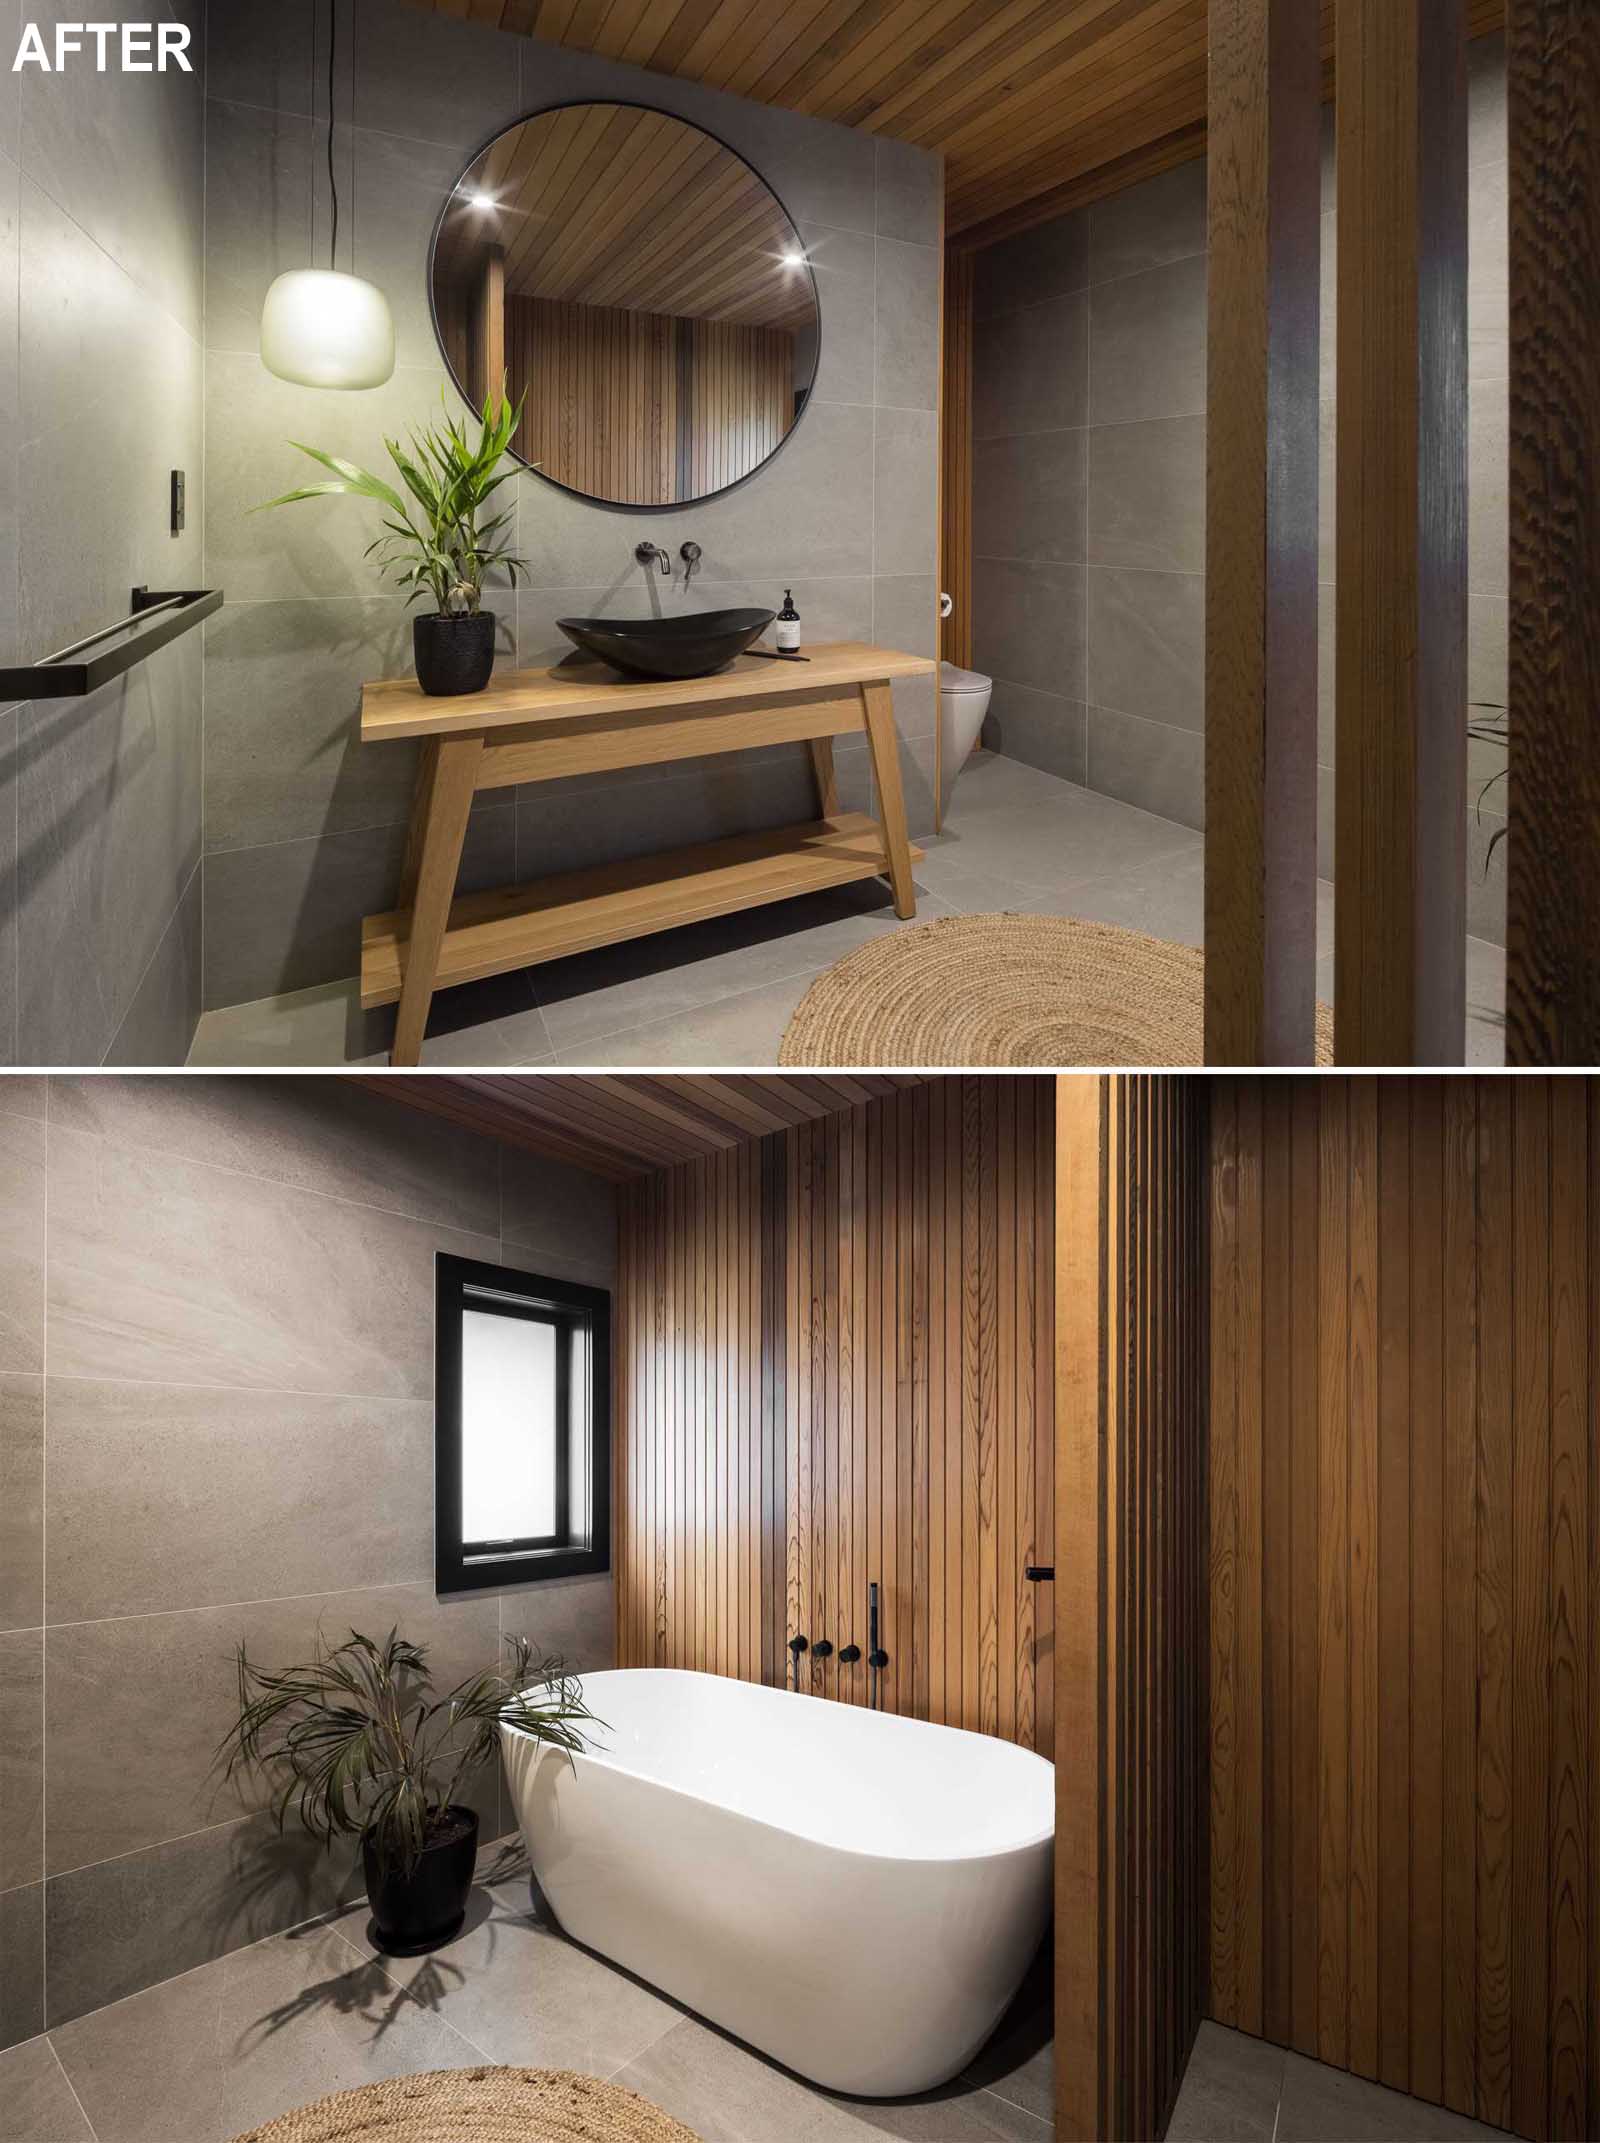 حمامی مدرن و اسپا مانند، با ،اصر چوبی طبیعی، کاشی‌هایی با فرمت بزرگ، و وان حمام مستقل با دیوار برجسته چوبی.